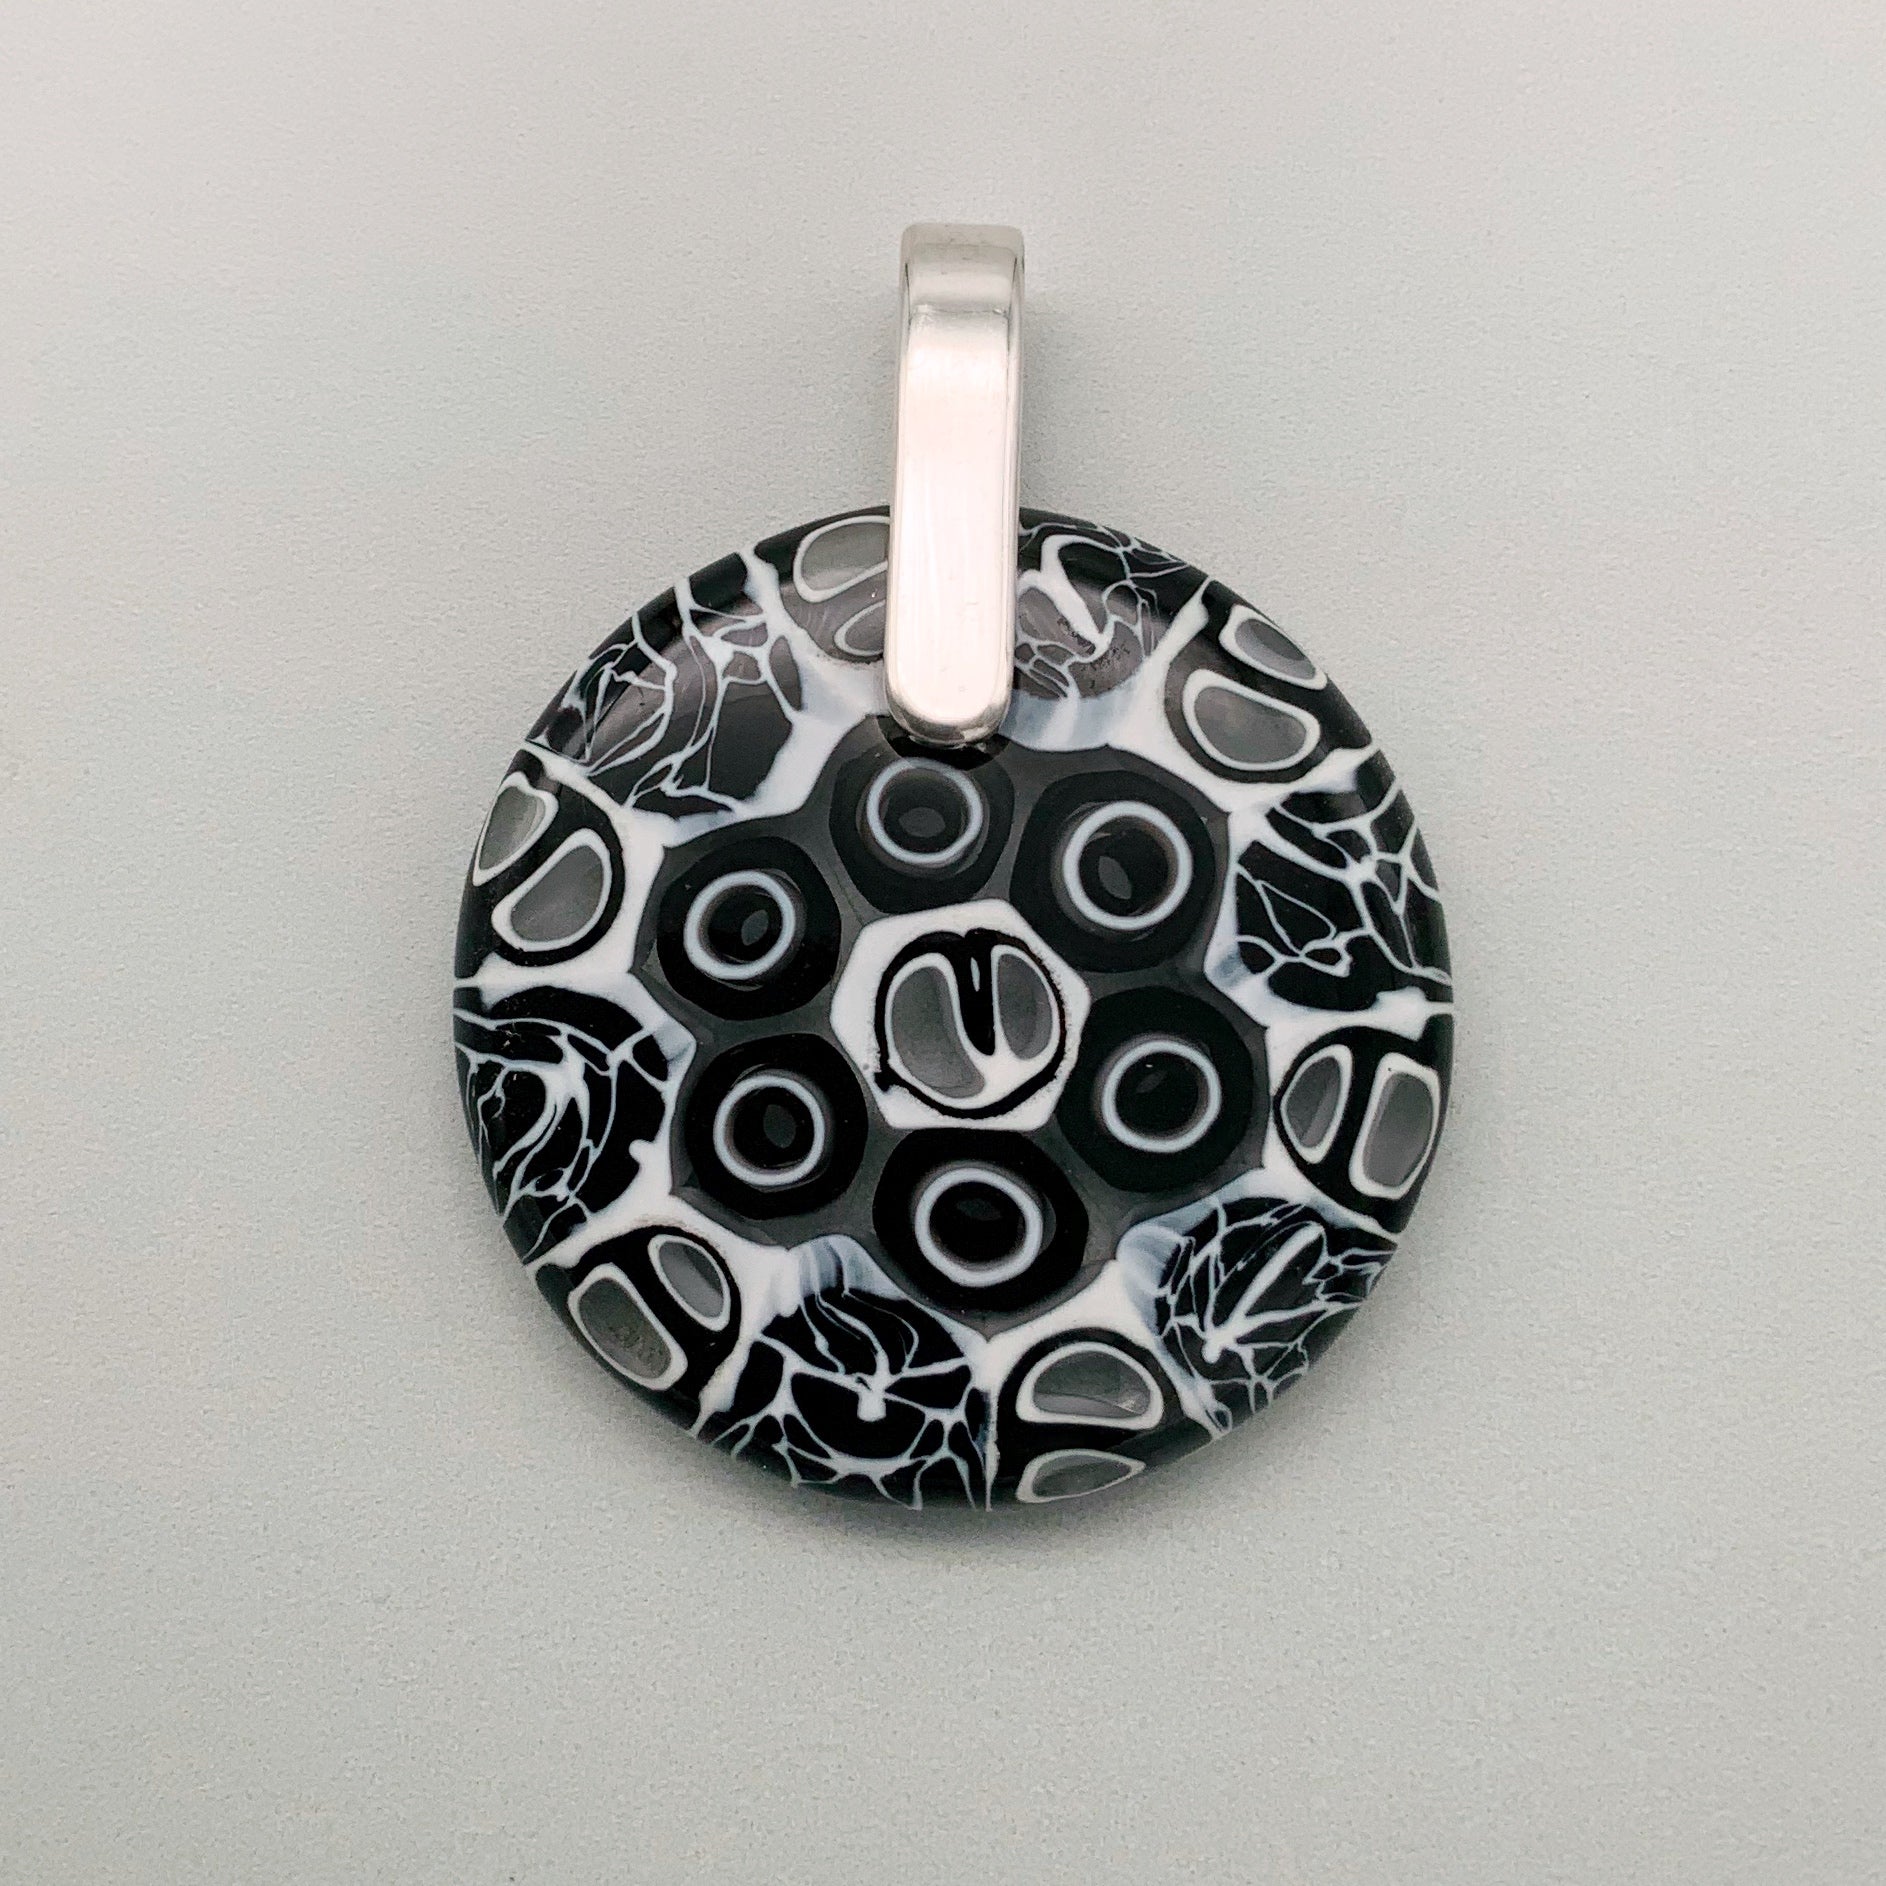 Murrini black and white round 35mm glass pendant